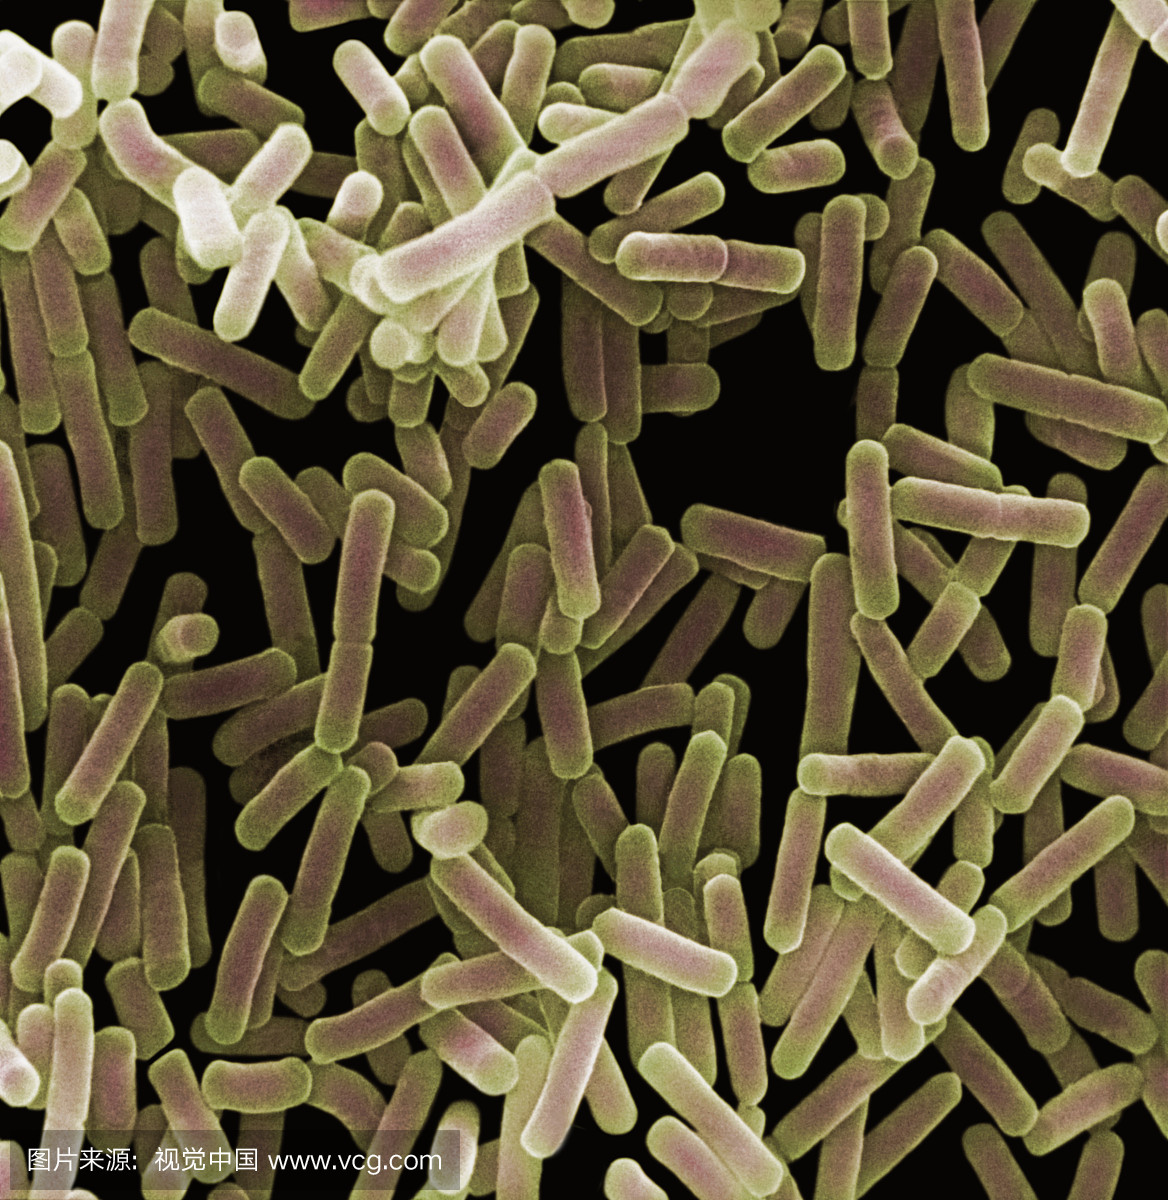 奇异变形杆菌是革兰氏阴性杆菌,其天然存在于